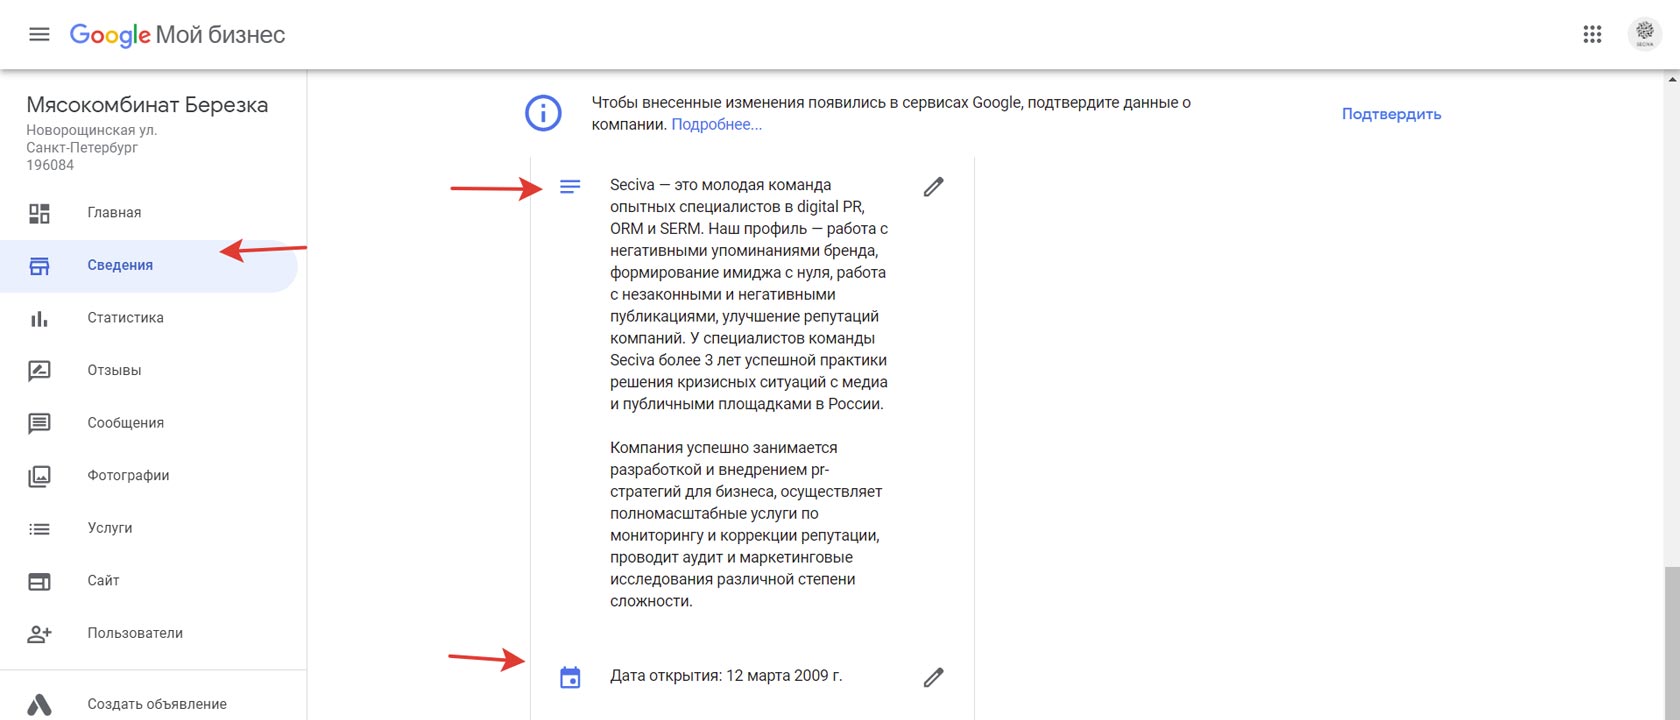 Дата открытия гугла в России